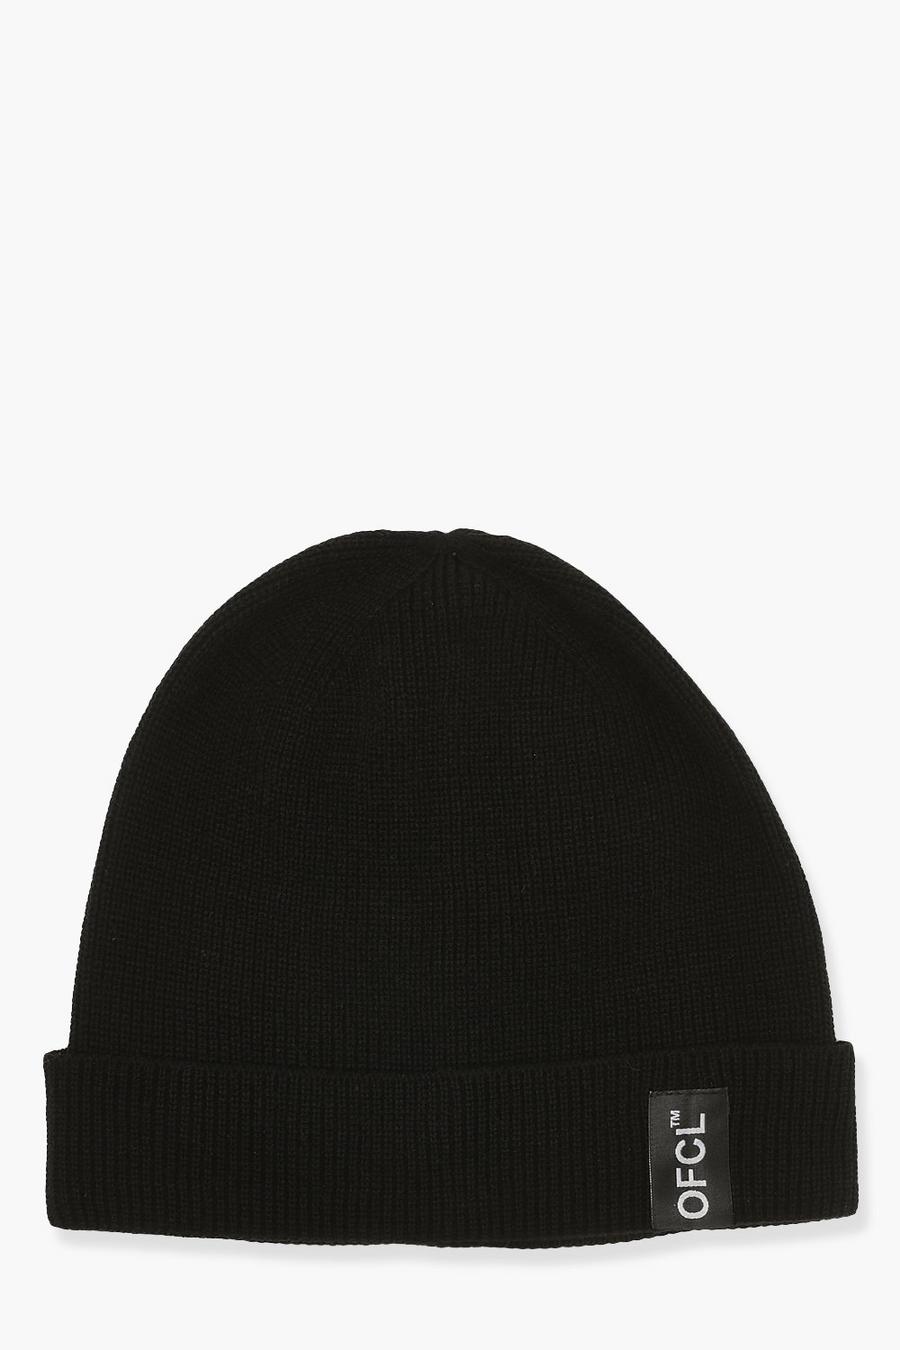 שחור כובע צמר ריב עם לשונית ארוגה וכיתוב Offcl image number 1